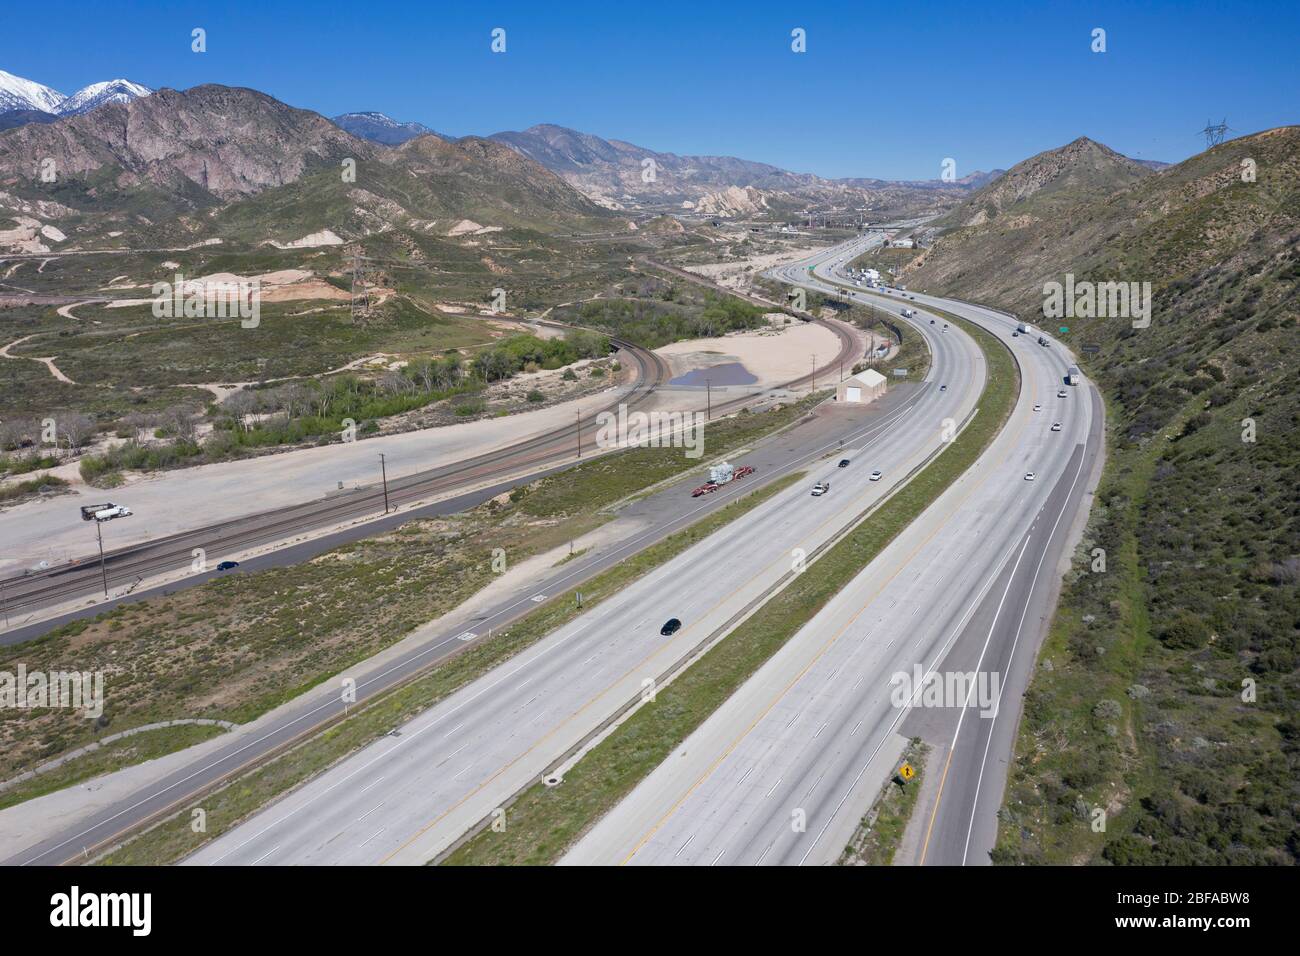 Luftaufnahme der Interstate 15 (I-15) Autobahn, wie es die Steigung am Cajon Pass steigt, der Los Angeles mit der Wüste und Las Vegas verbindet Stockfoto